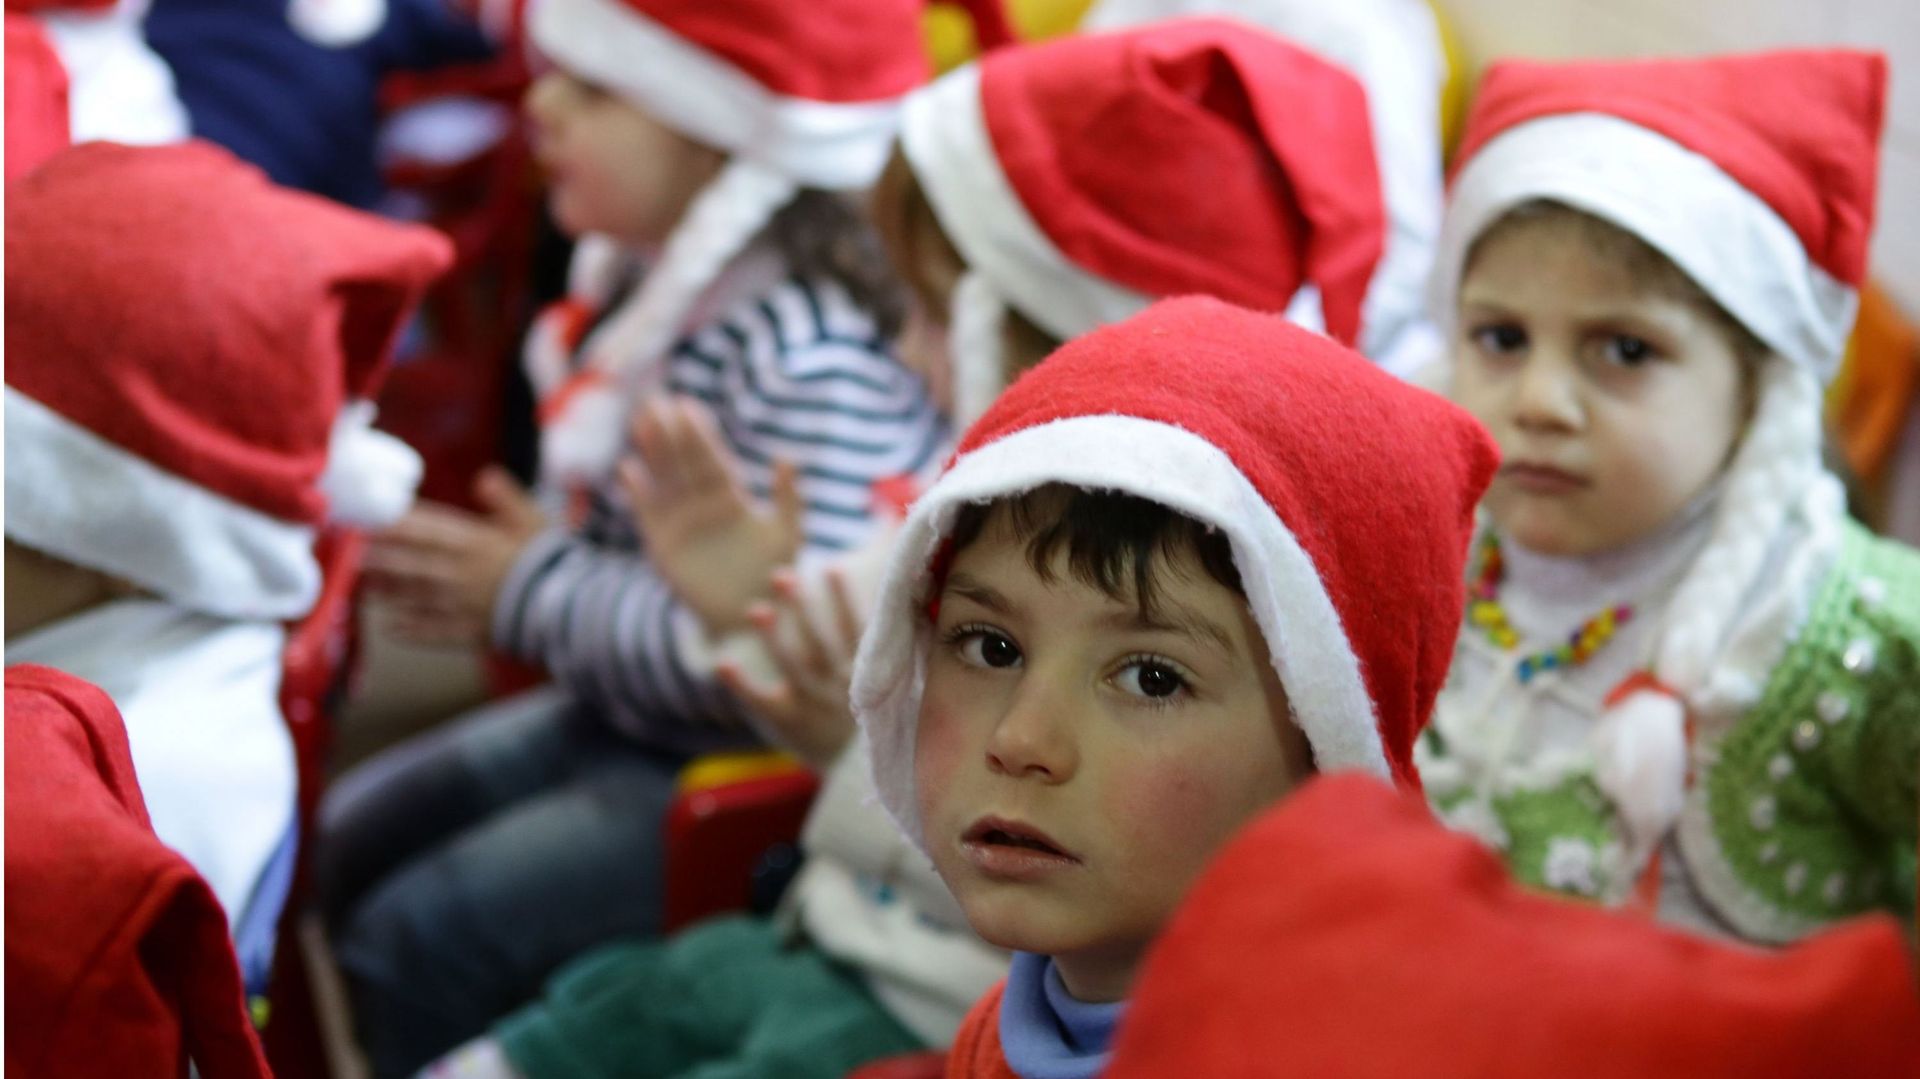 Illustration: des enfants syriens célèbrent Noël à Damas